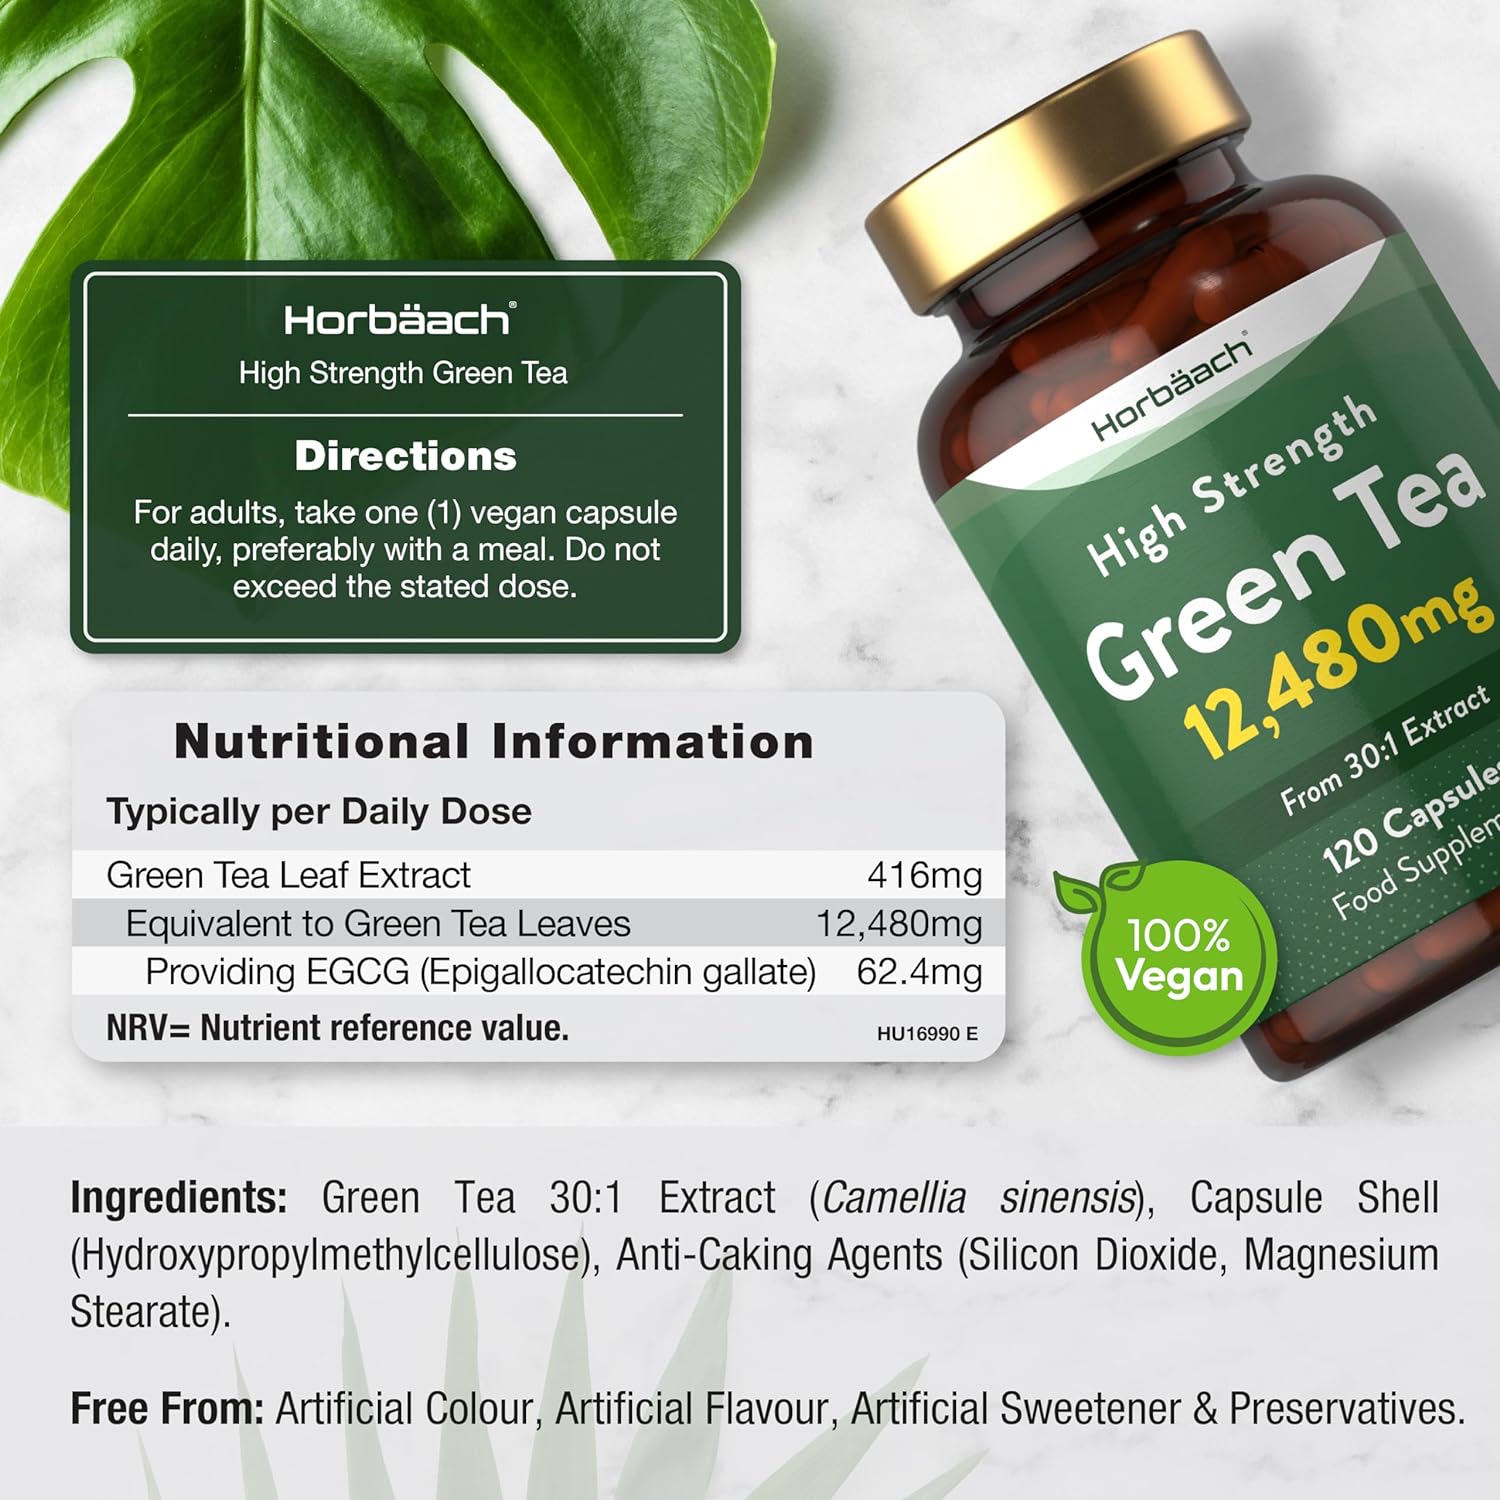 Green Tea 12,480 mg | 120 Capsules